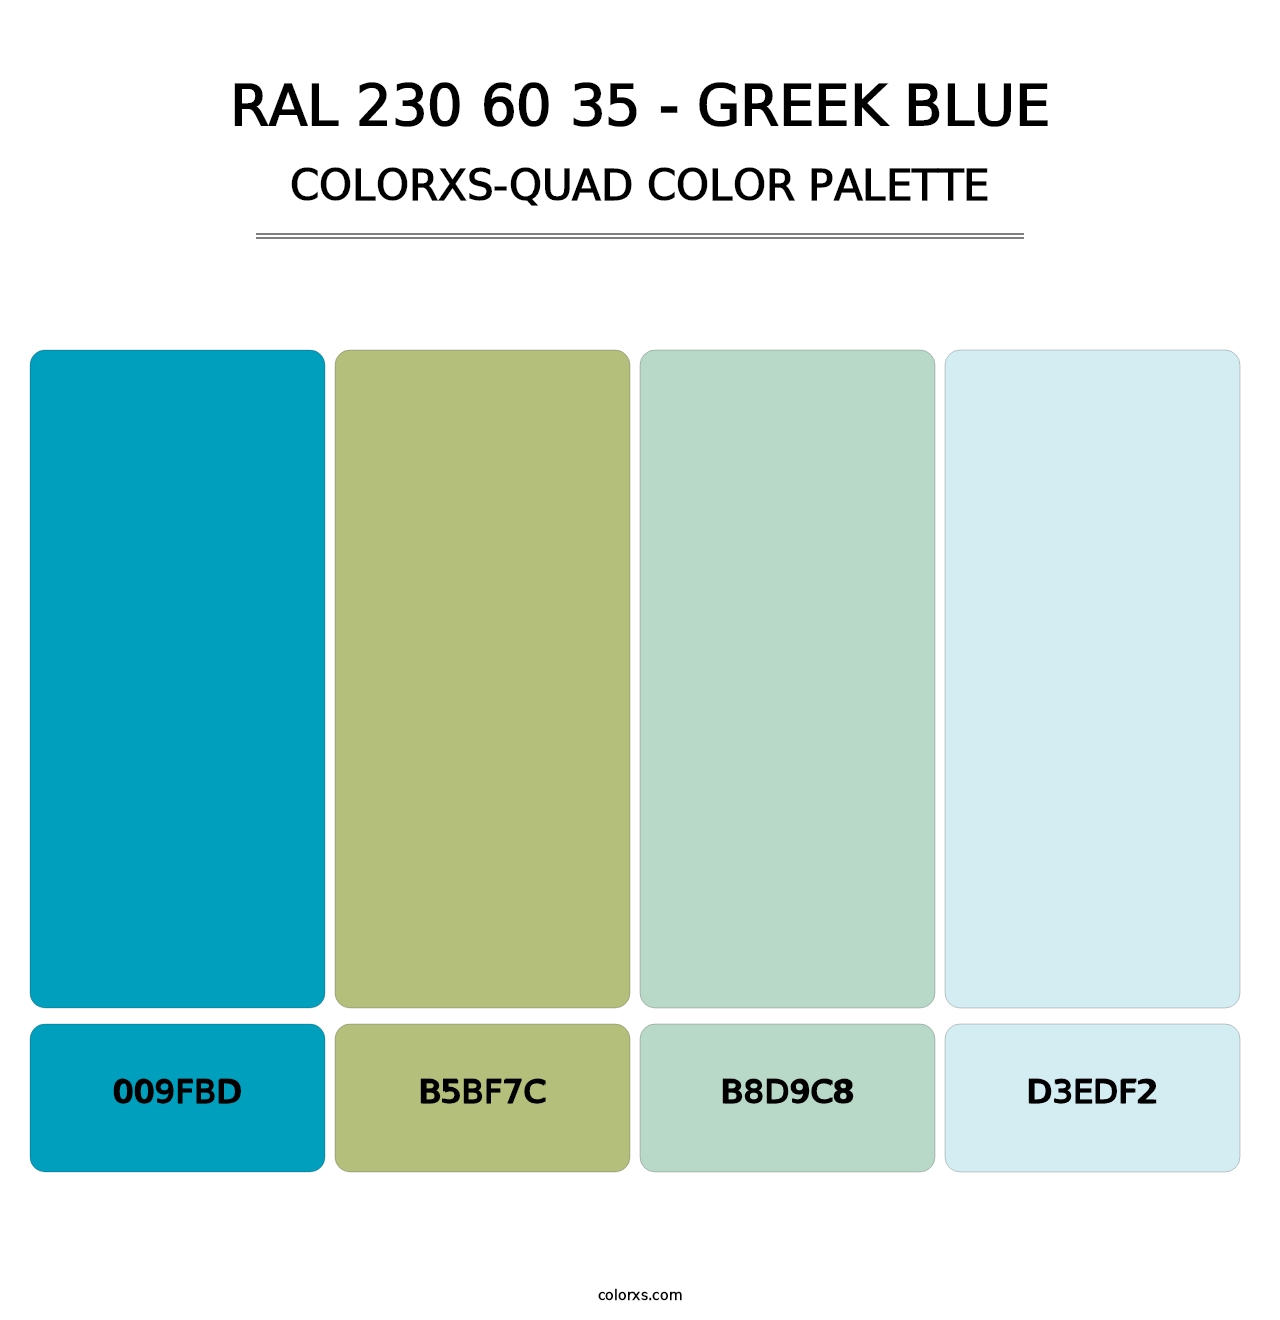 RAL 230 60 35 - Greek Blue - Colorxs Quad Palette